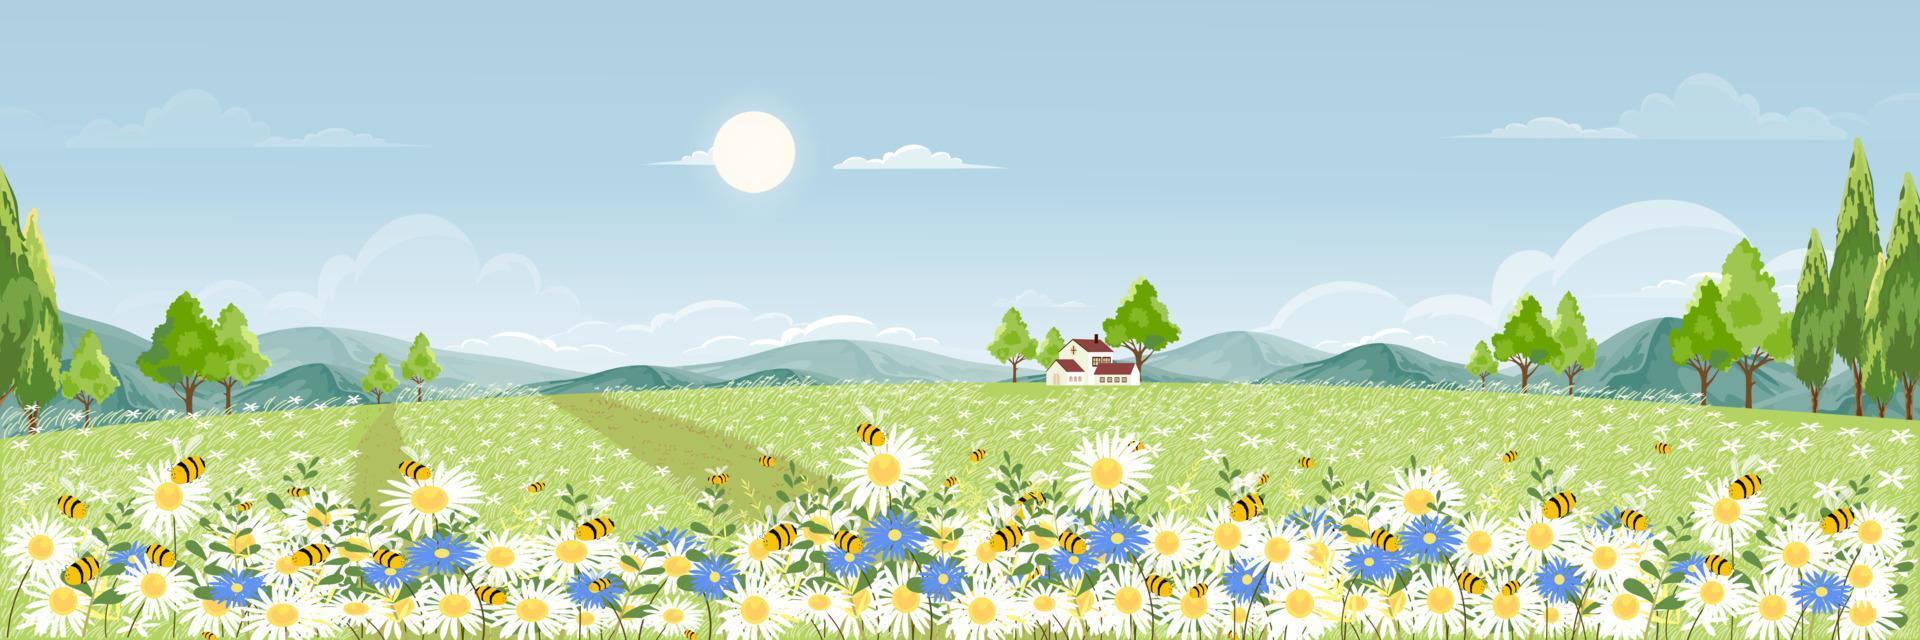 campo primaverile con soffice nuvola sul cielo blu, simpatico cartone animato panorama paesaggio rurale erba verde con ape miele che raccoglie polline sui fiori in una giornata di sole estate, banner di sfondo vettoriale per la primavera